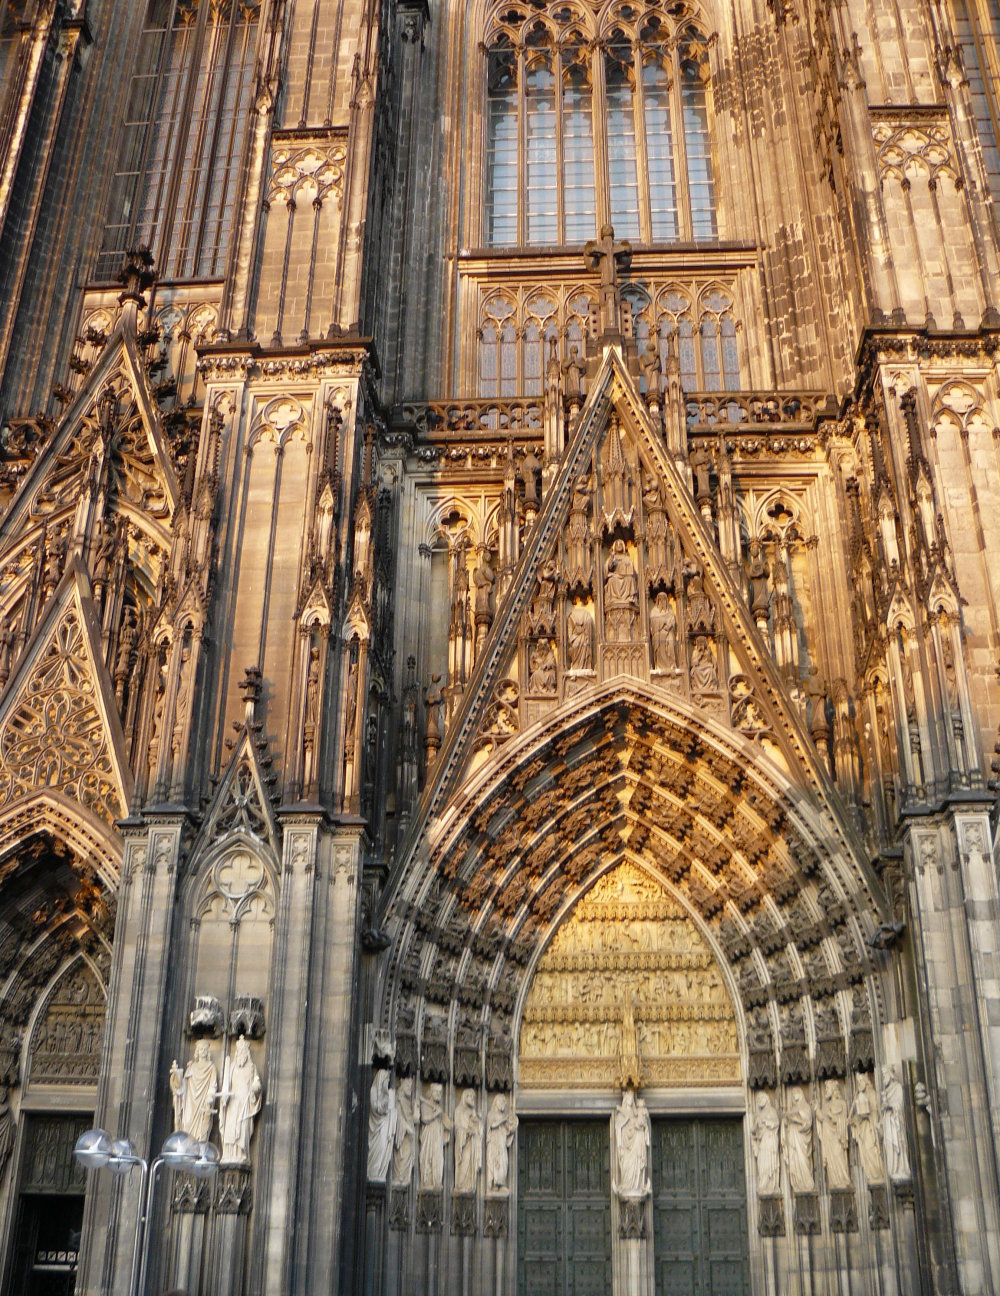 Dom Köln - Cologne Cathedral